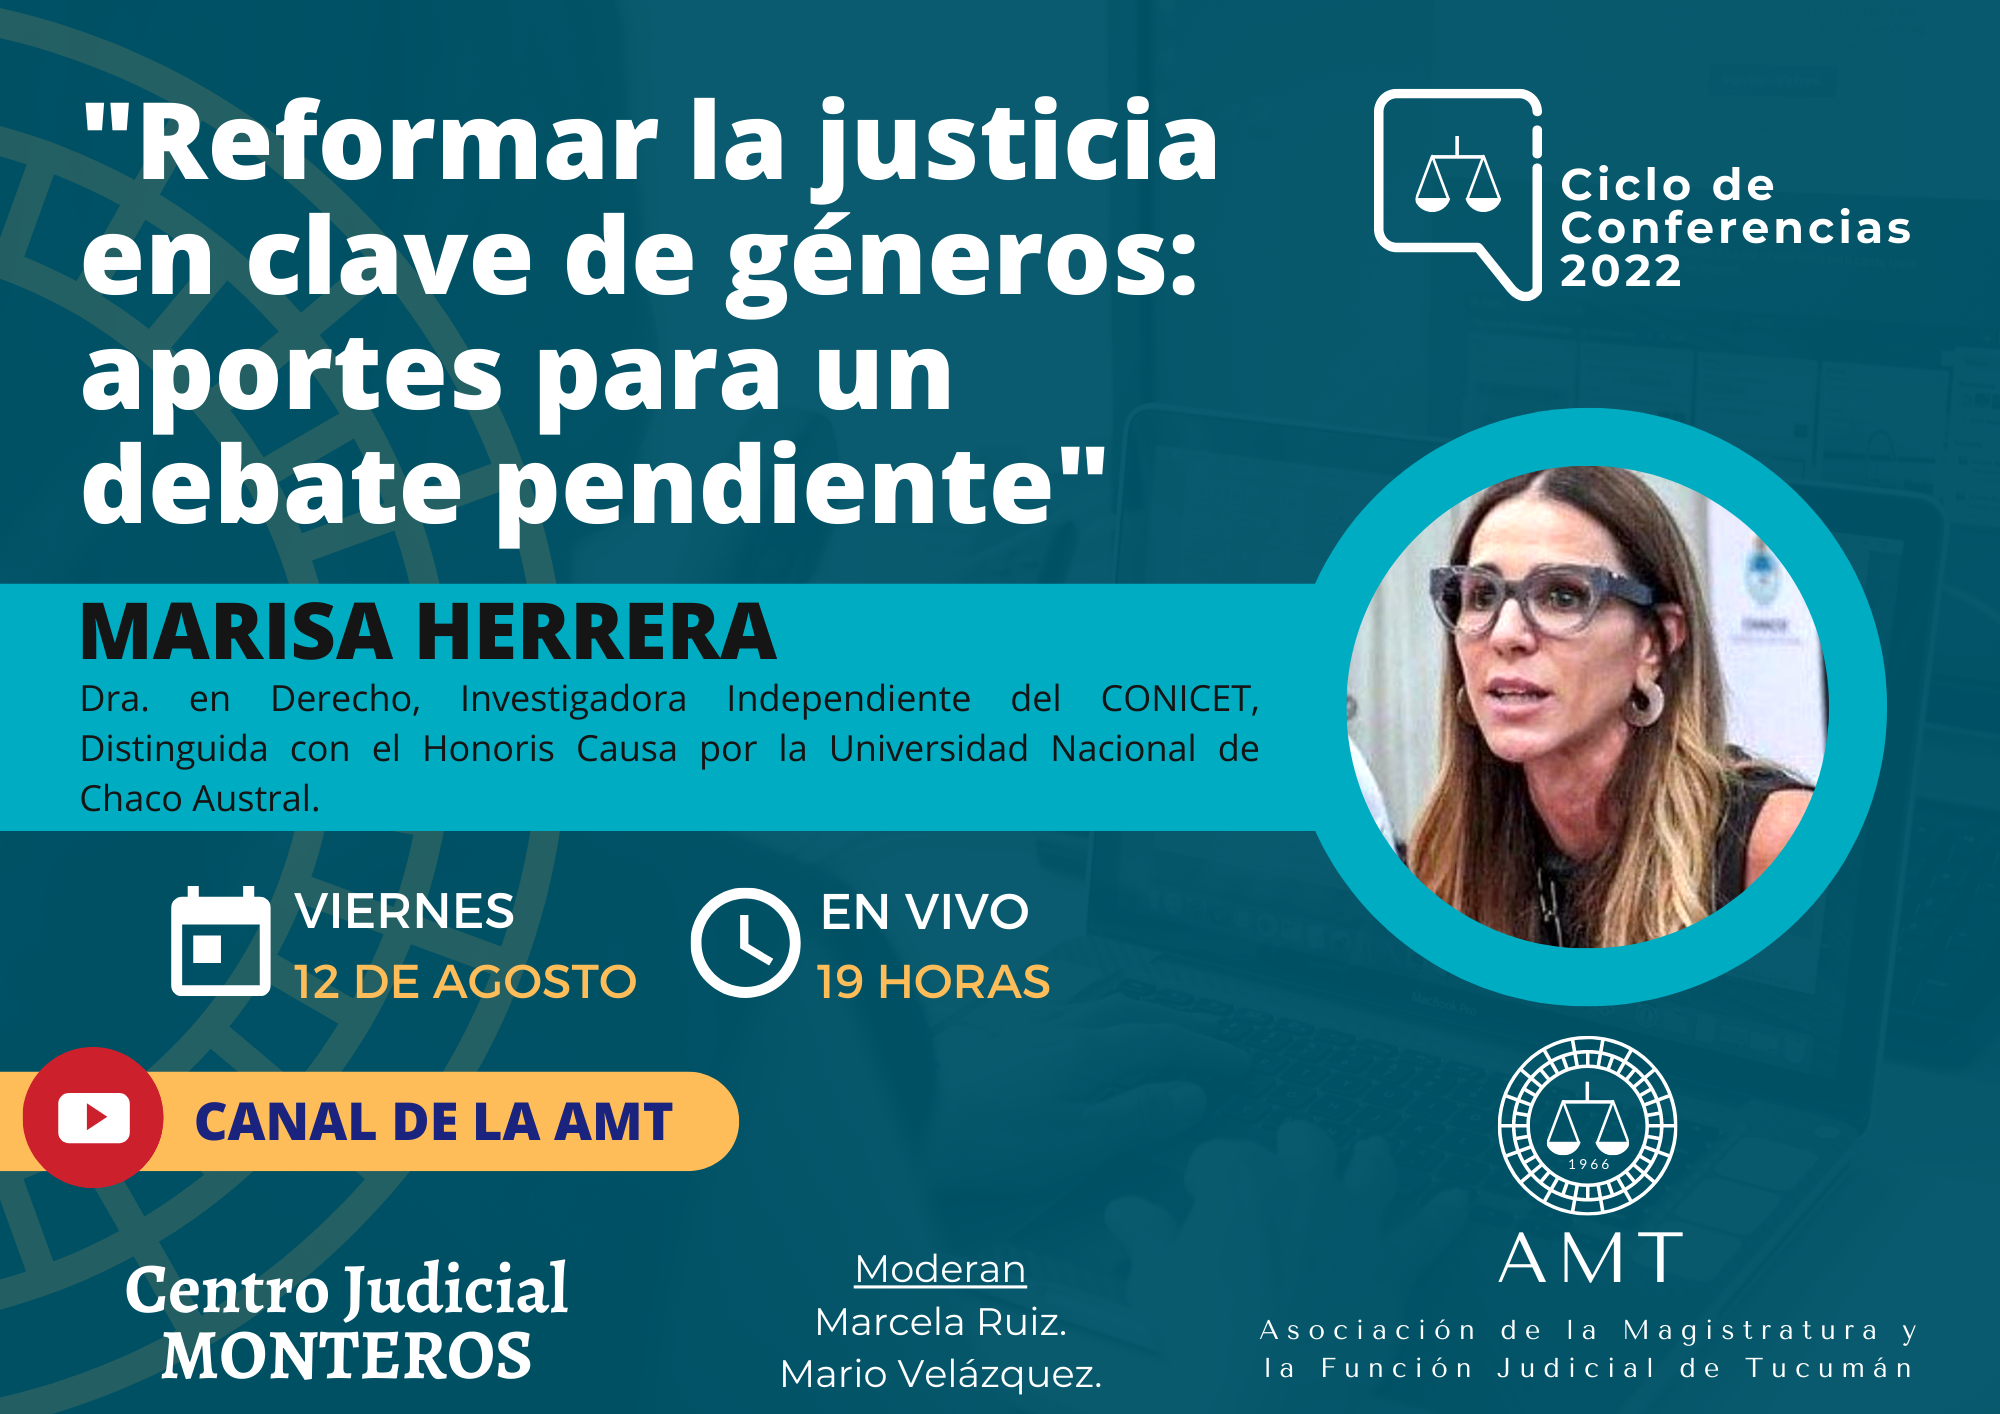 Vuelva a ver la conferencia de Marisa Herrera «Reformar la justicia en clave de géneros: aportes para un debate pendiente»